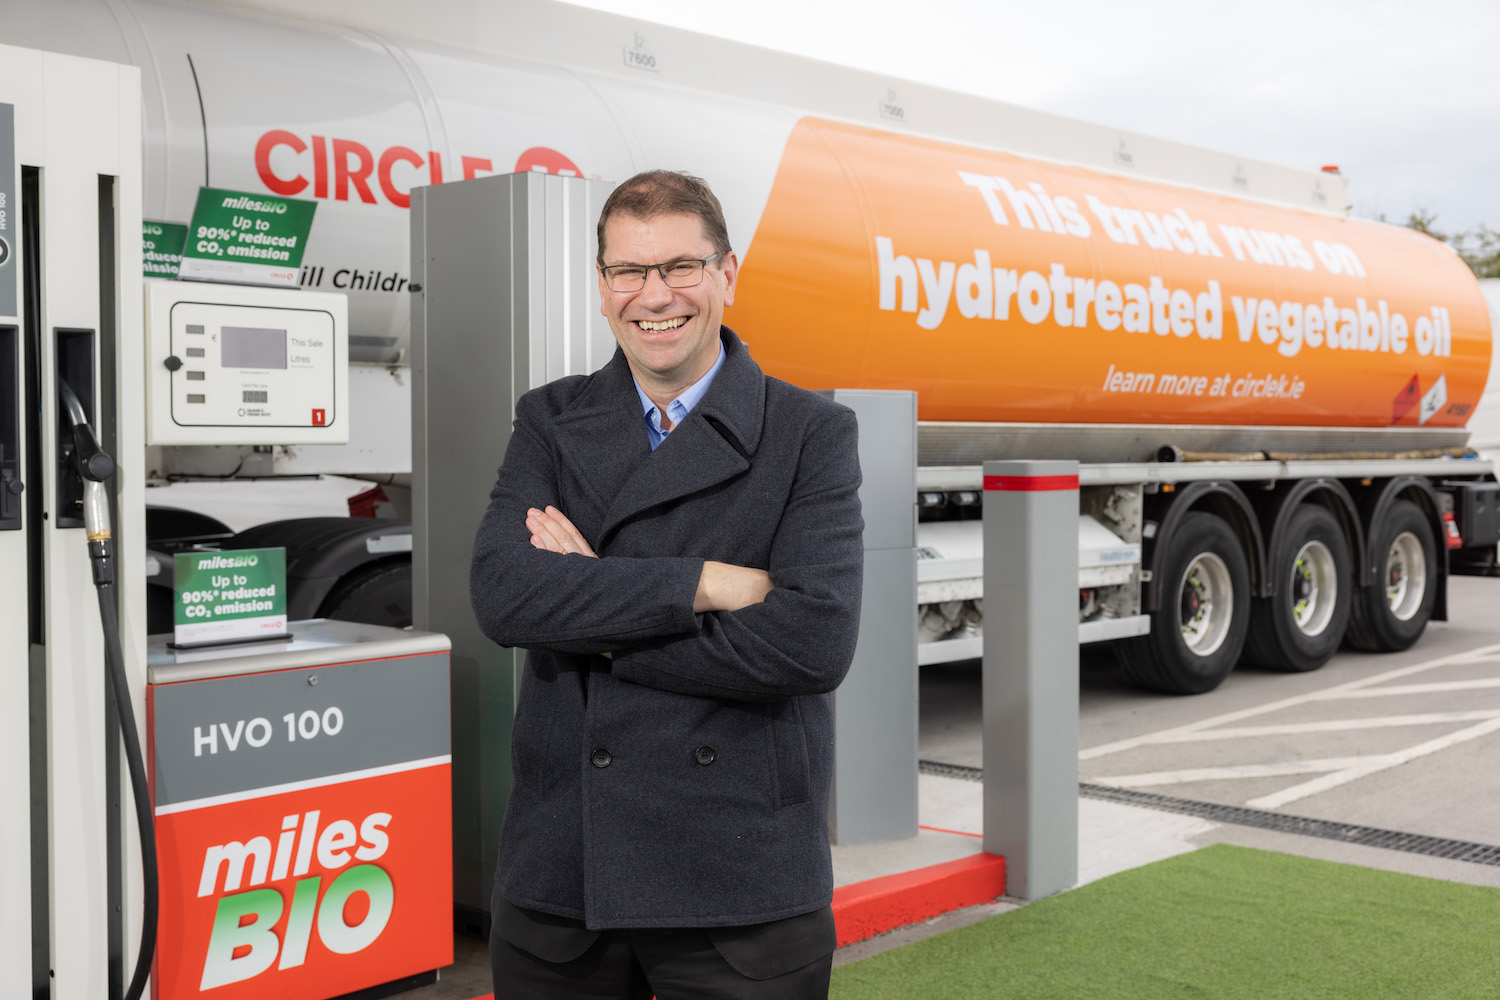 Van News | Circle K switches fleet to biofuel | CompleteVan.ie